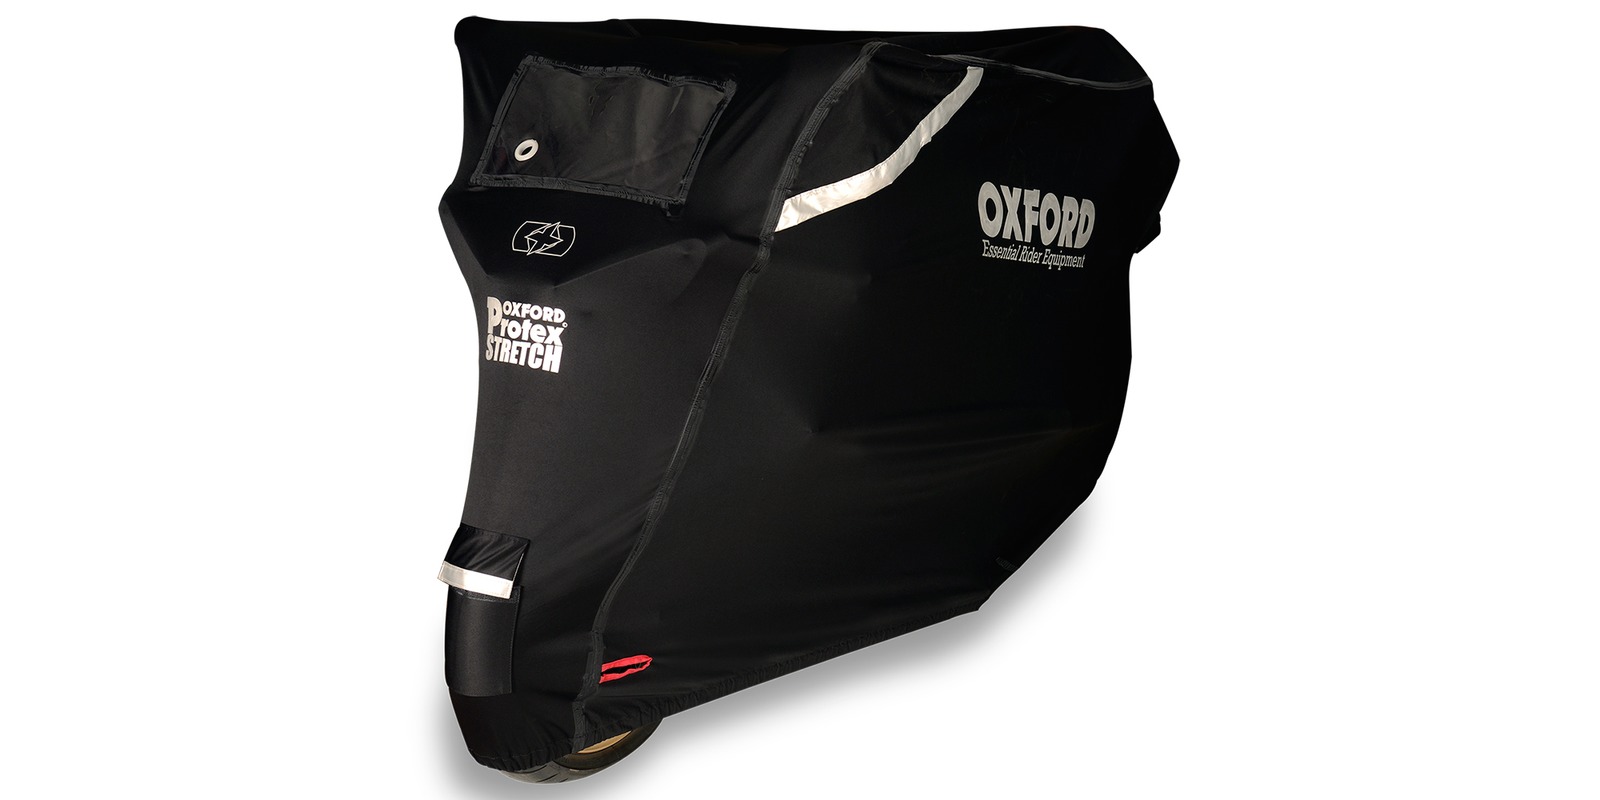 Obrázek produktu plachta na motorku Protex Stretch Outdoor s klimatickou membránou, OXFORD (černá)